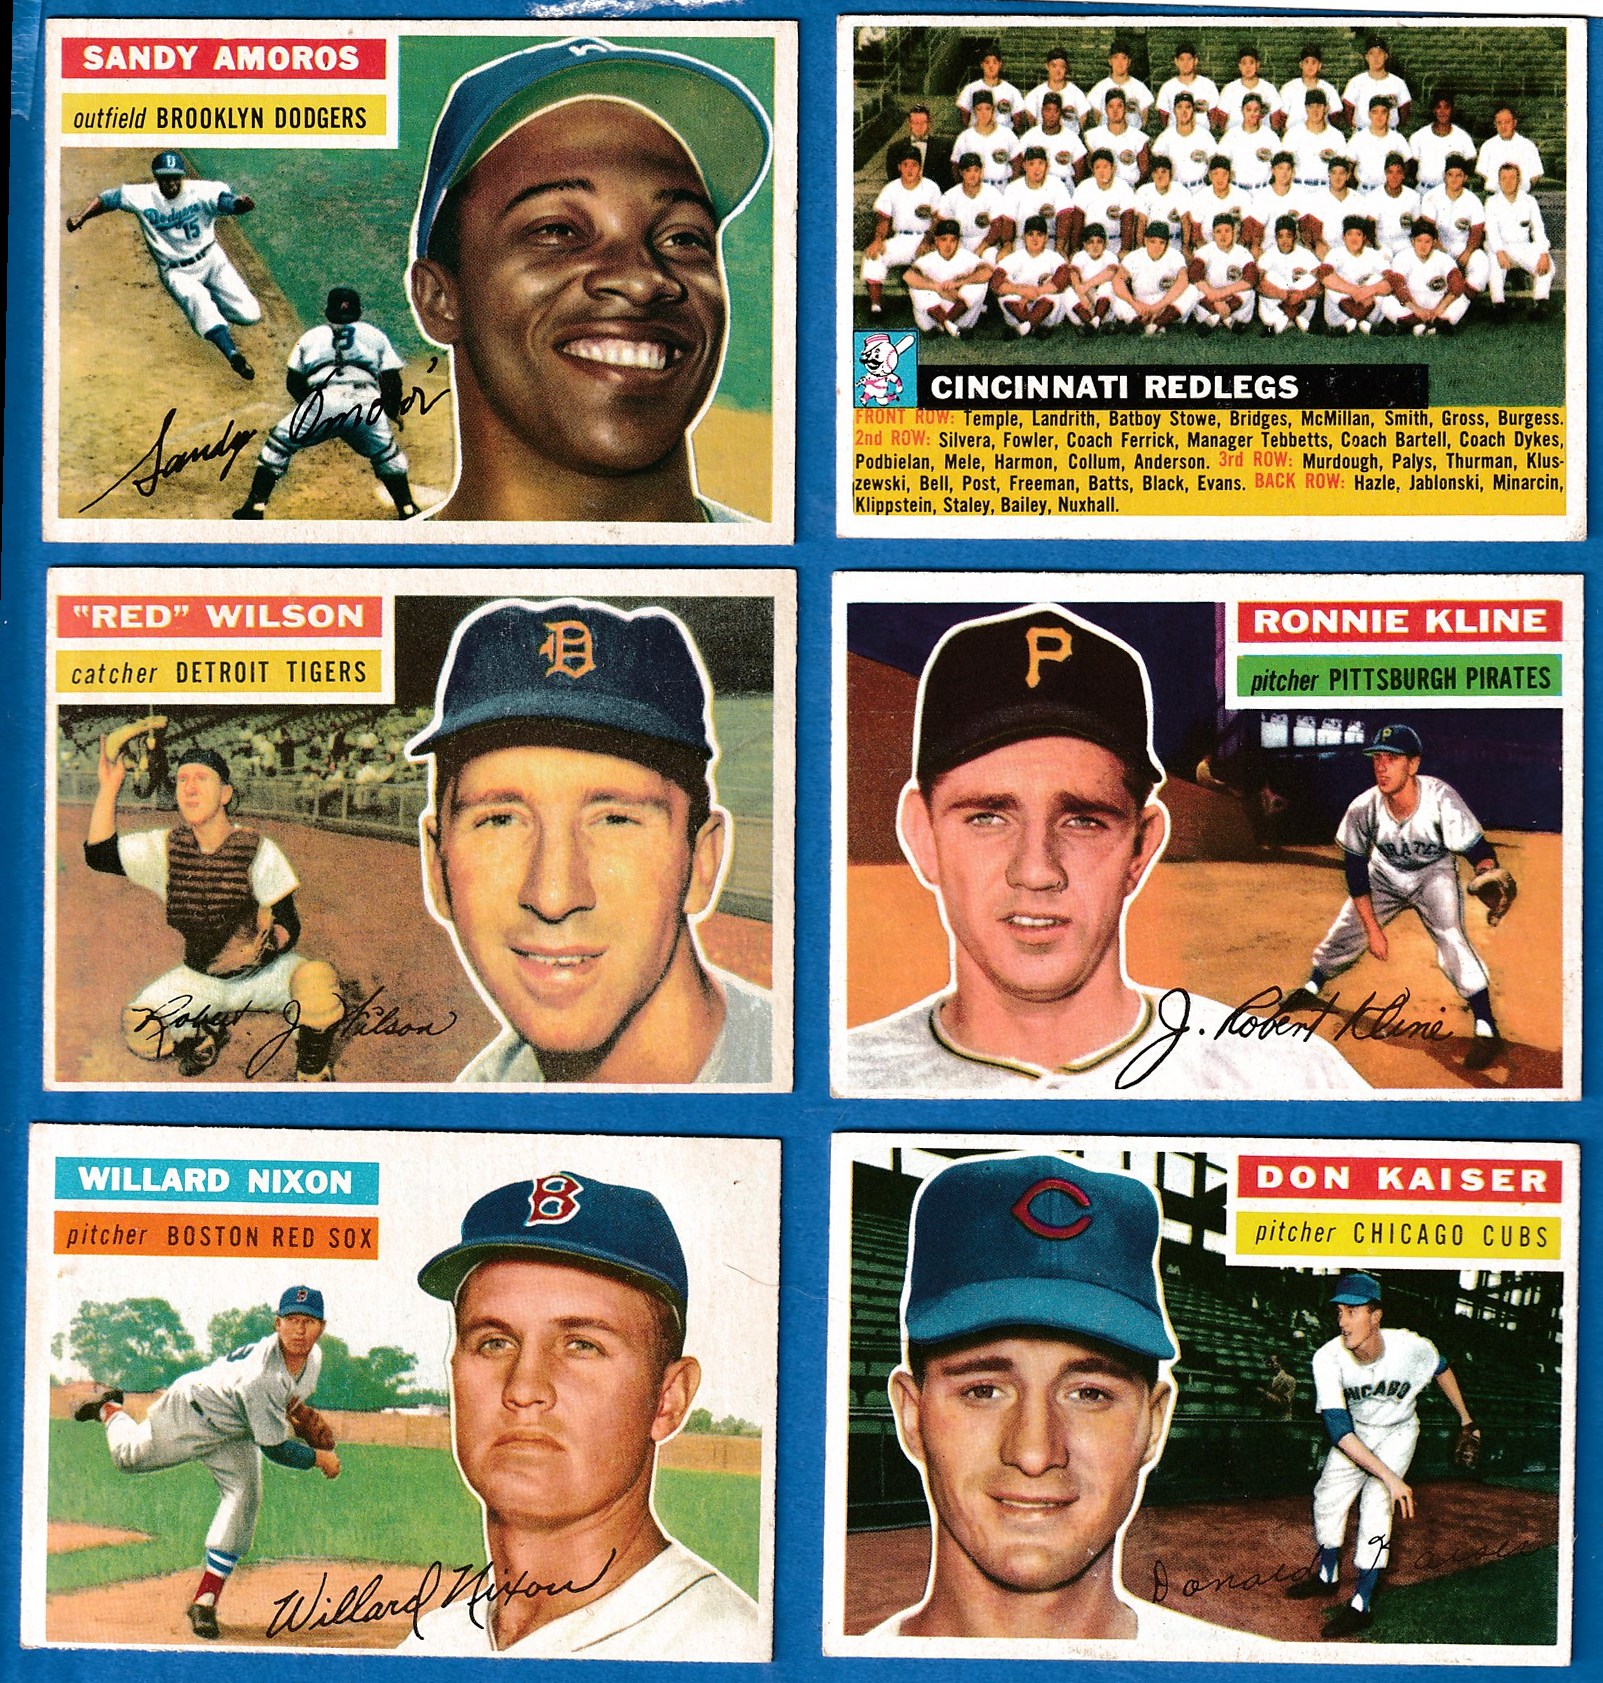 1956 Topps #124 Don Kaiser (Cubs) Baseball cards value